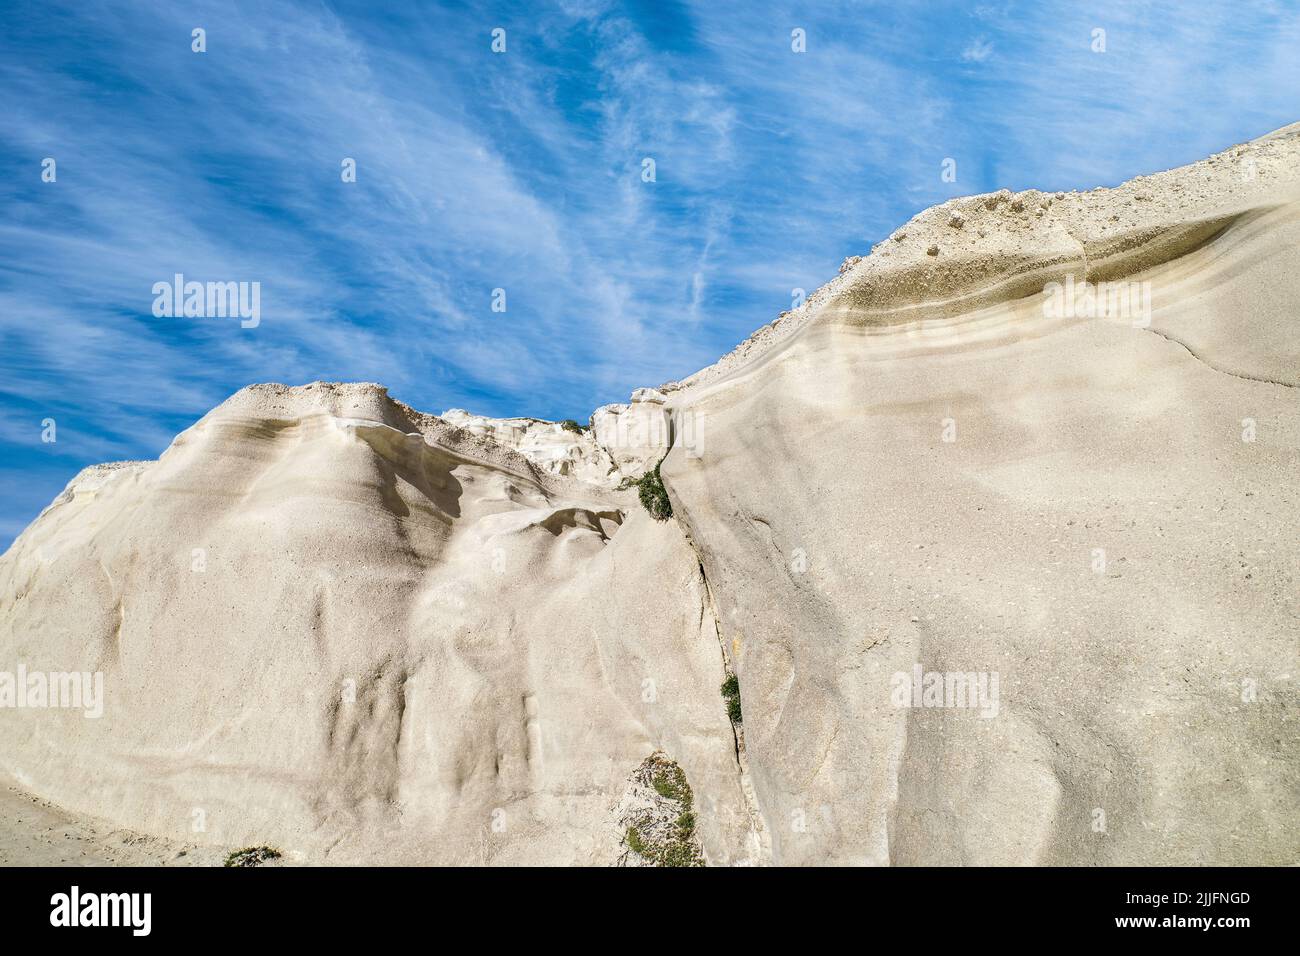 Berühmte weiße Felsen von Sarakiniko Strand, Ägäis, Insel Milos, Griechenland. Keine Menschen, leere Klippen, Sommersonne, Mondlandschaft, blauer Himmel, Wolken Stockfoto